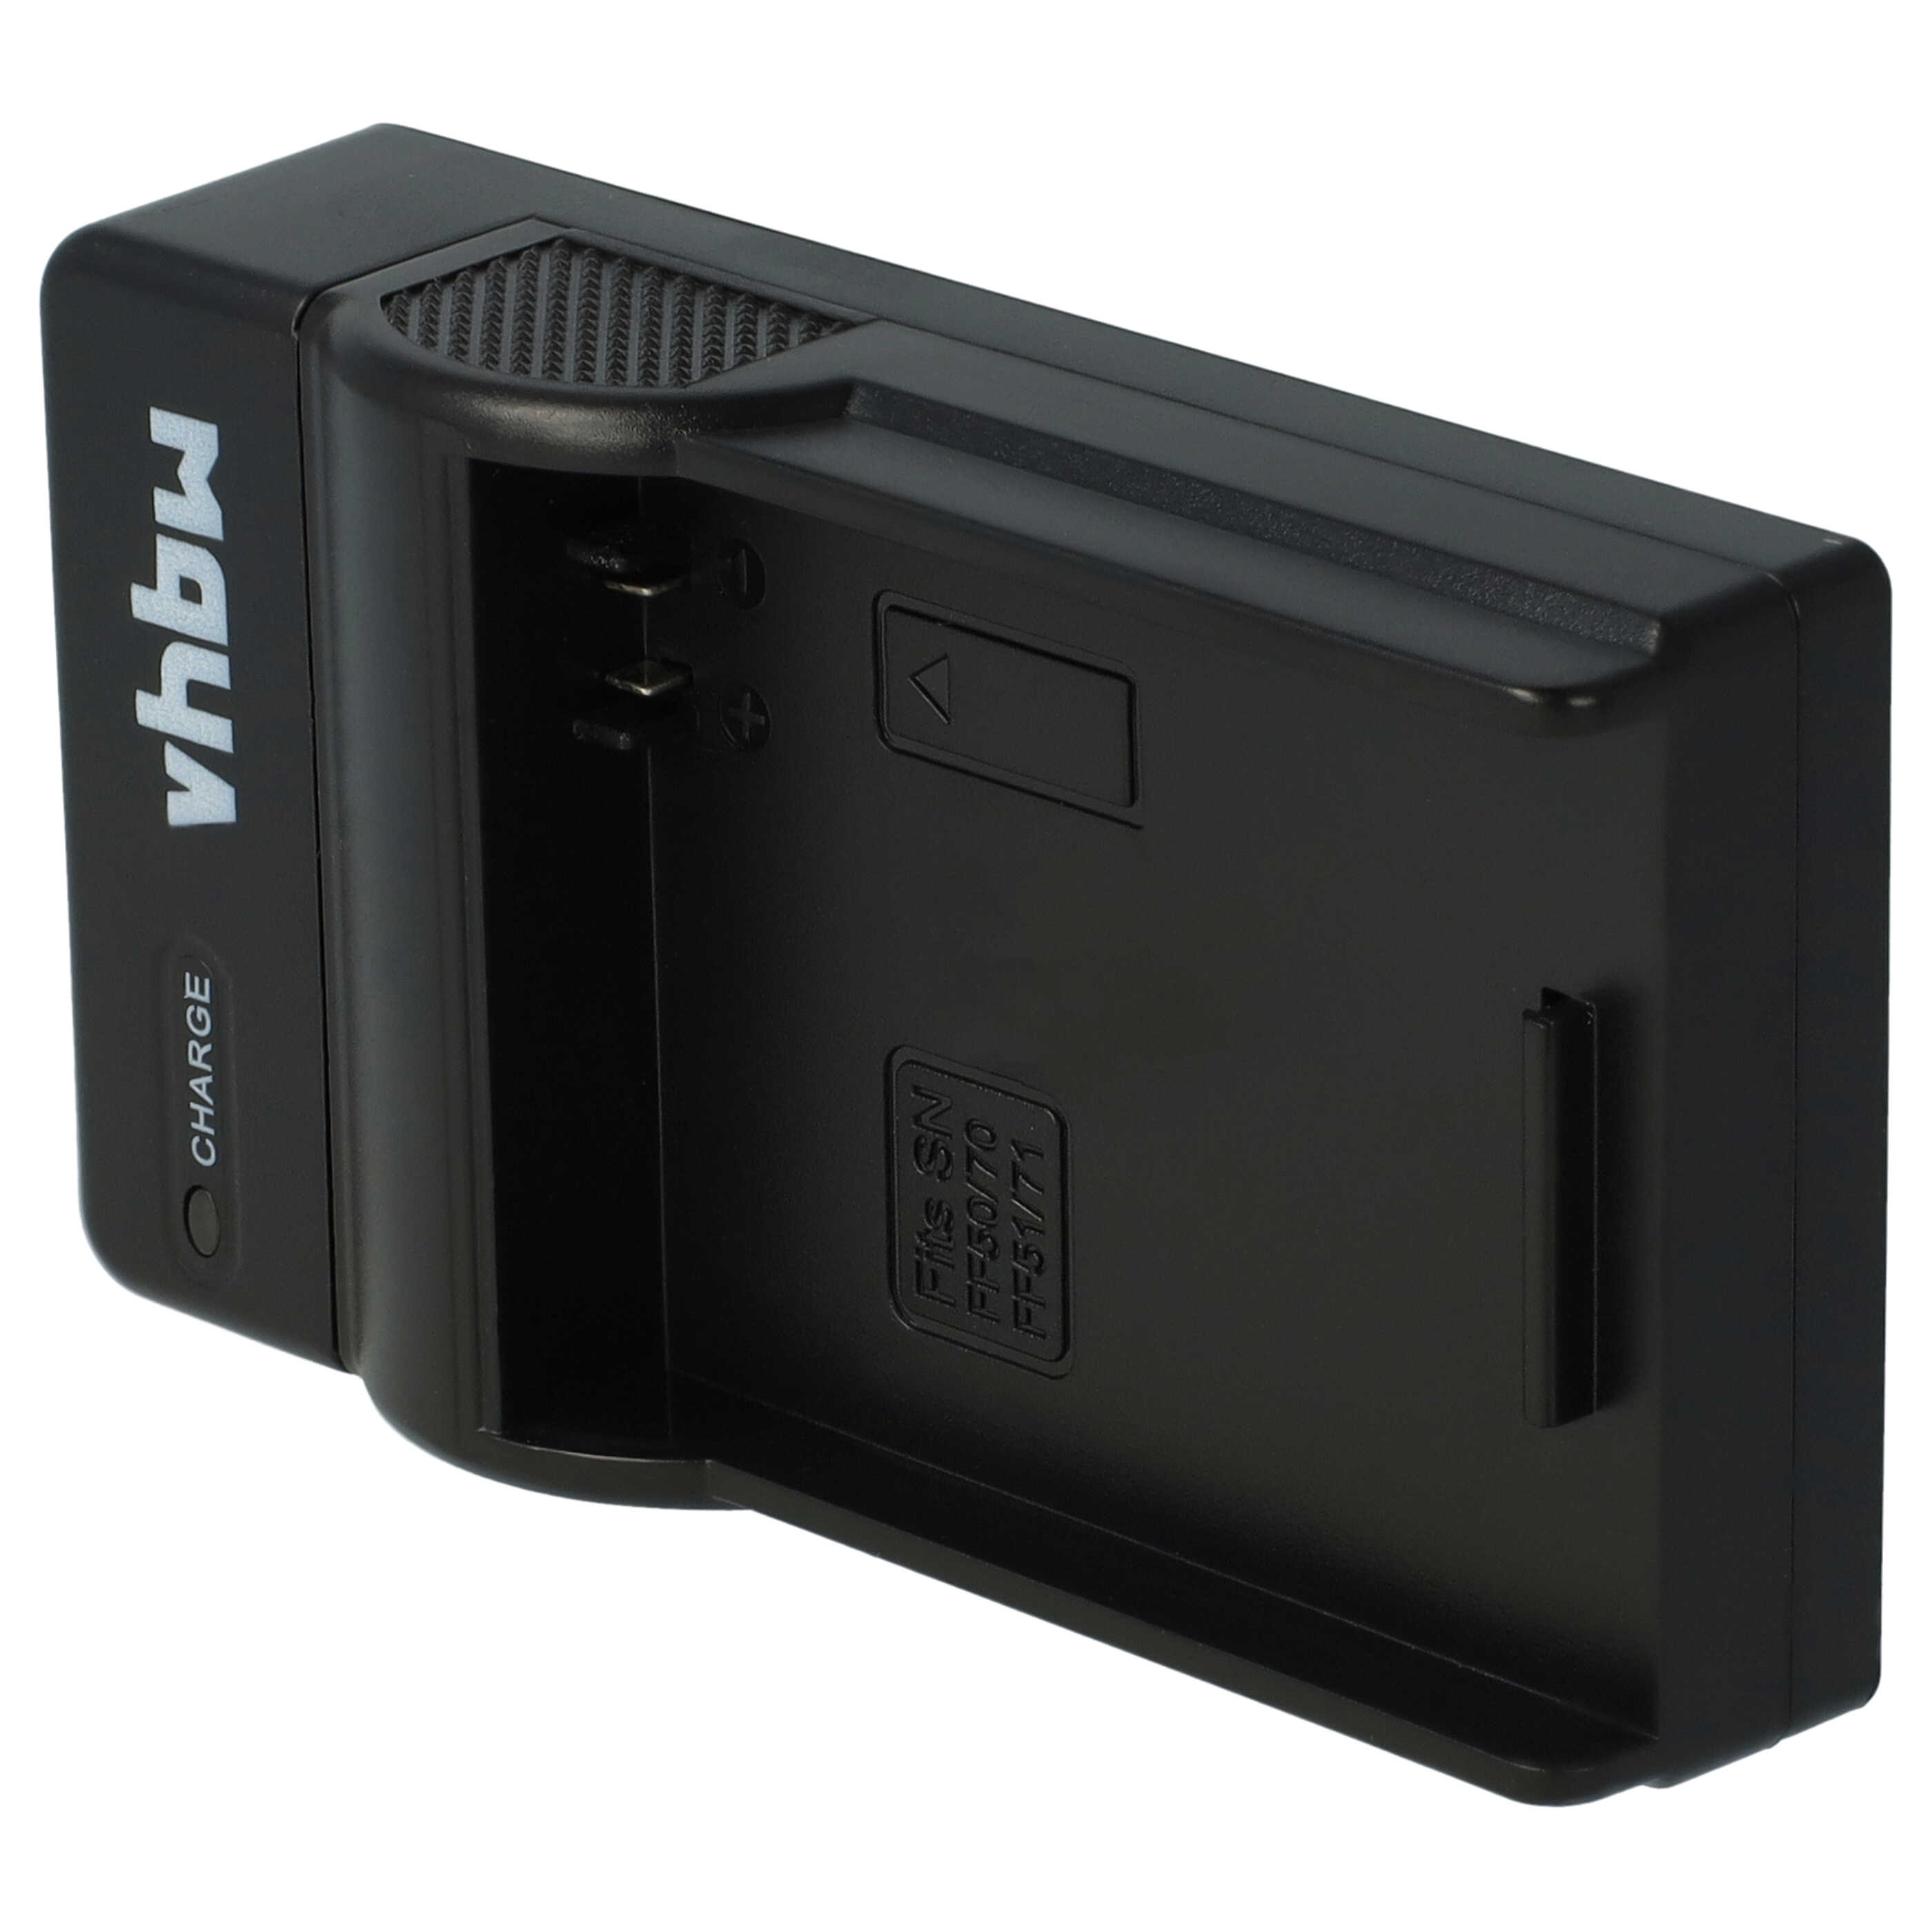 Akku Ladegerät passend für Sony NP-FF50 Kamera u.a. - 0,5 A, 8,4 V